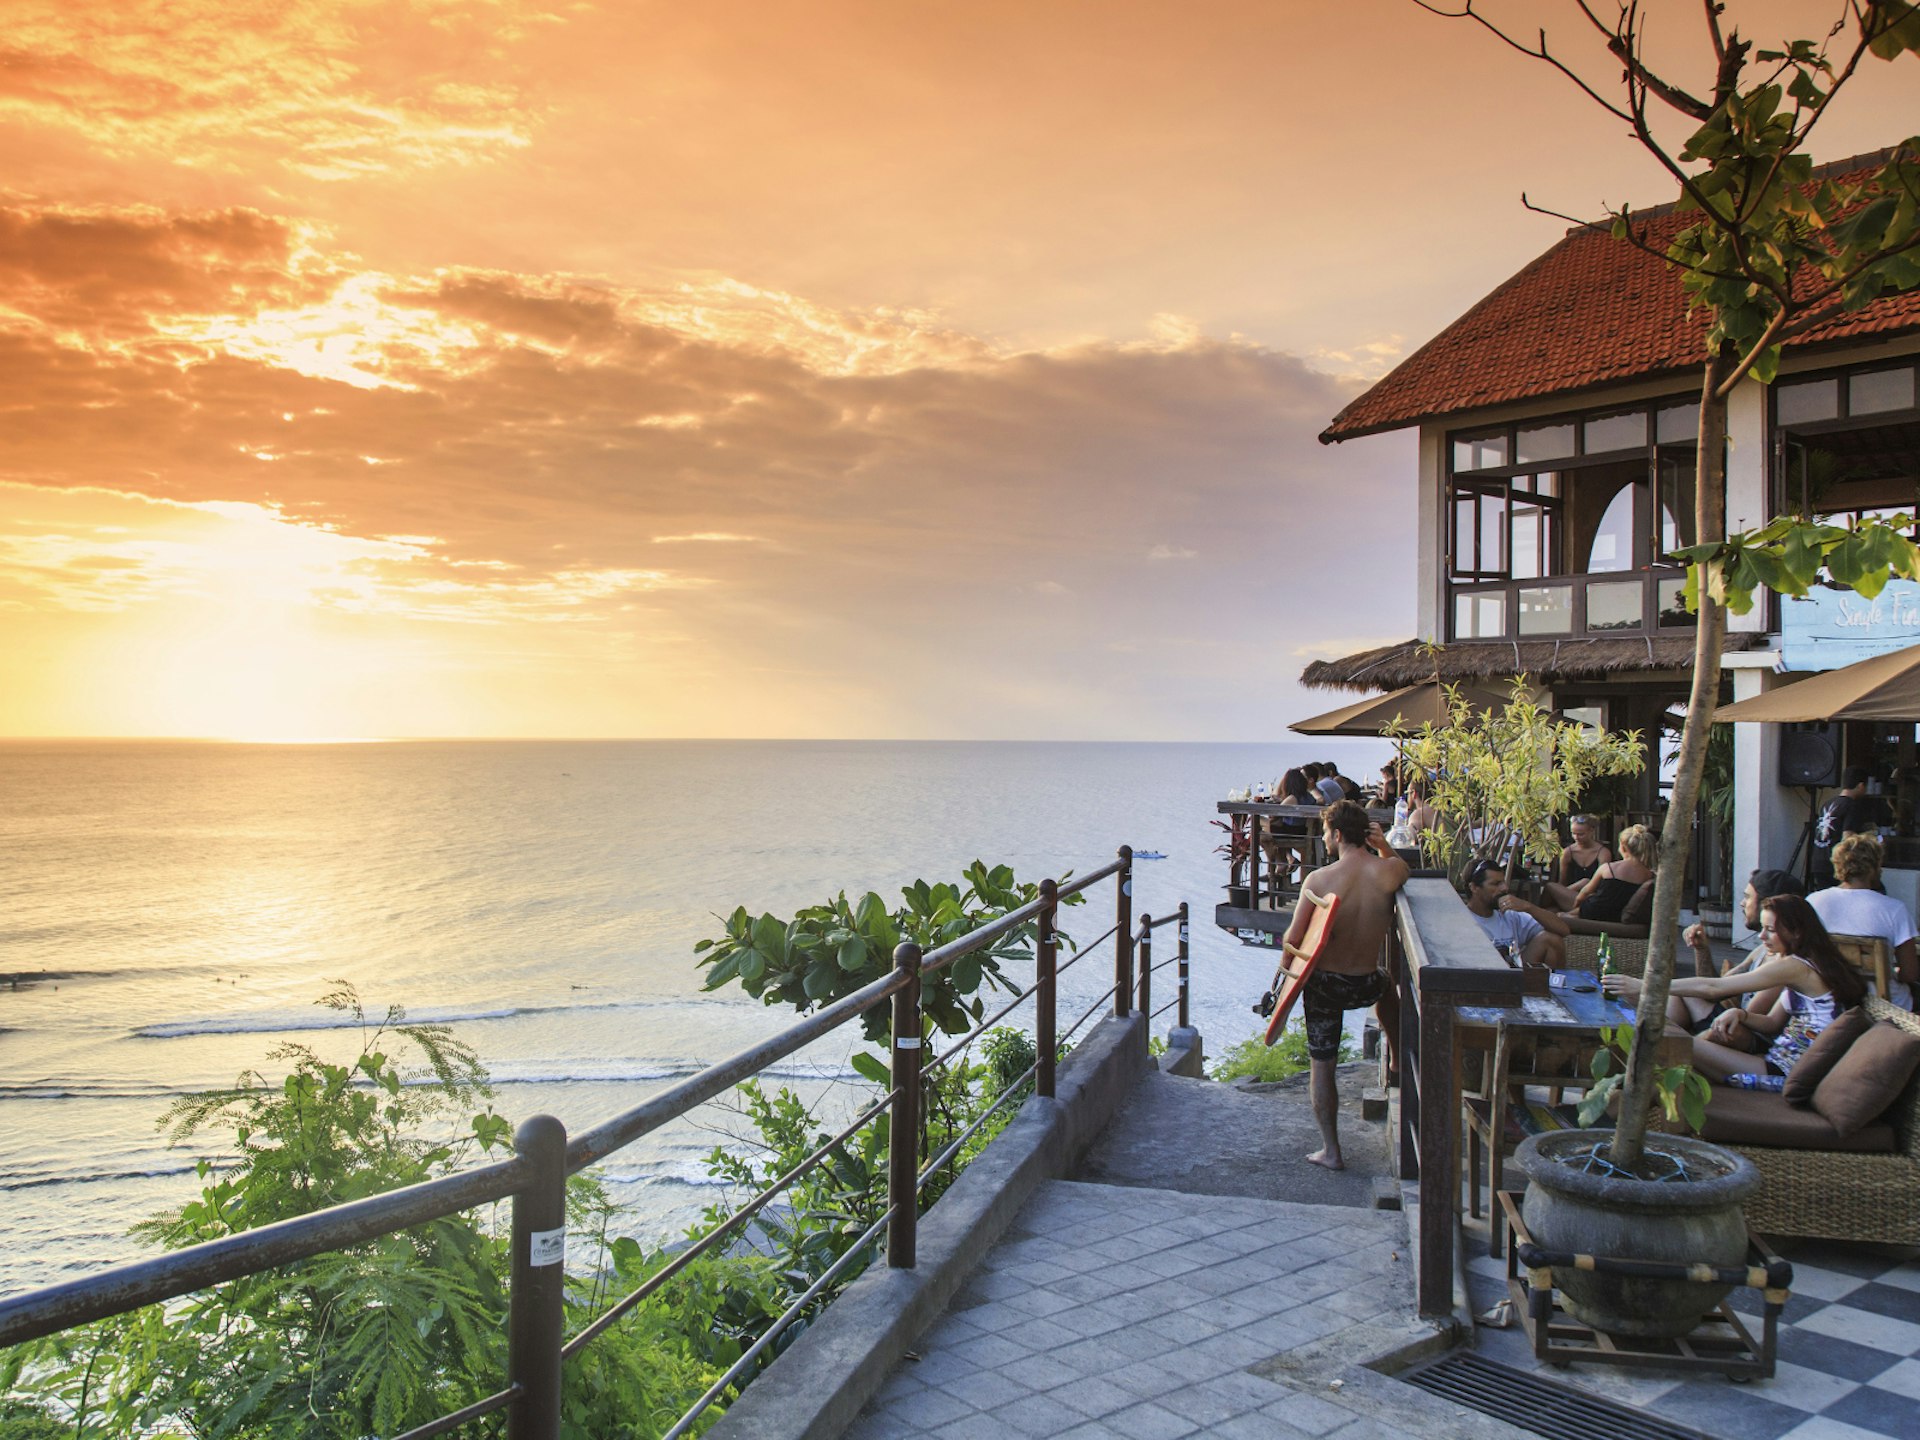 Clifftop cafe at Uluwatu, Bali